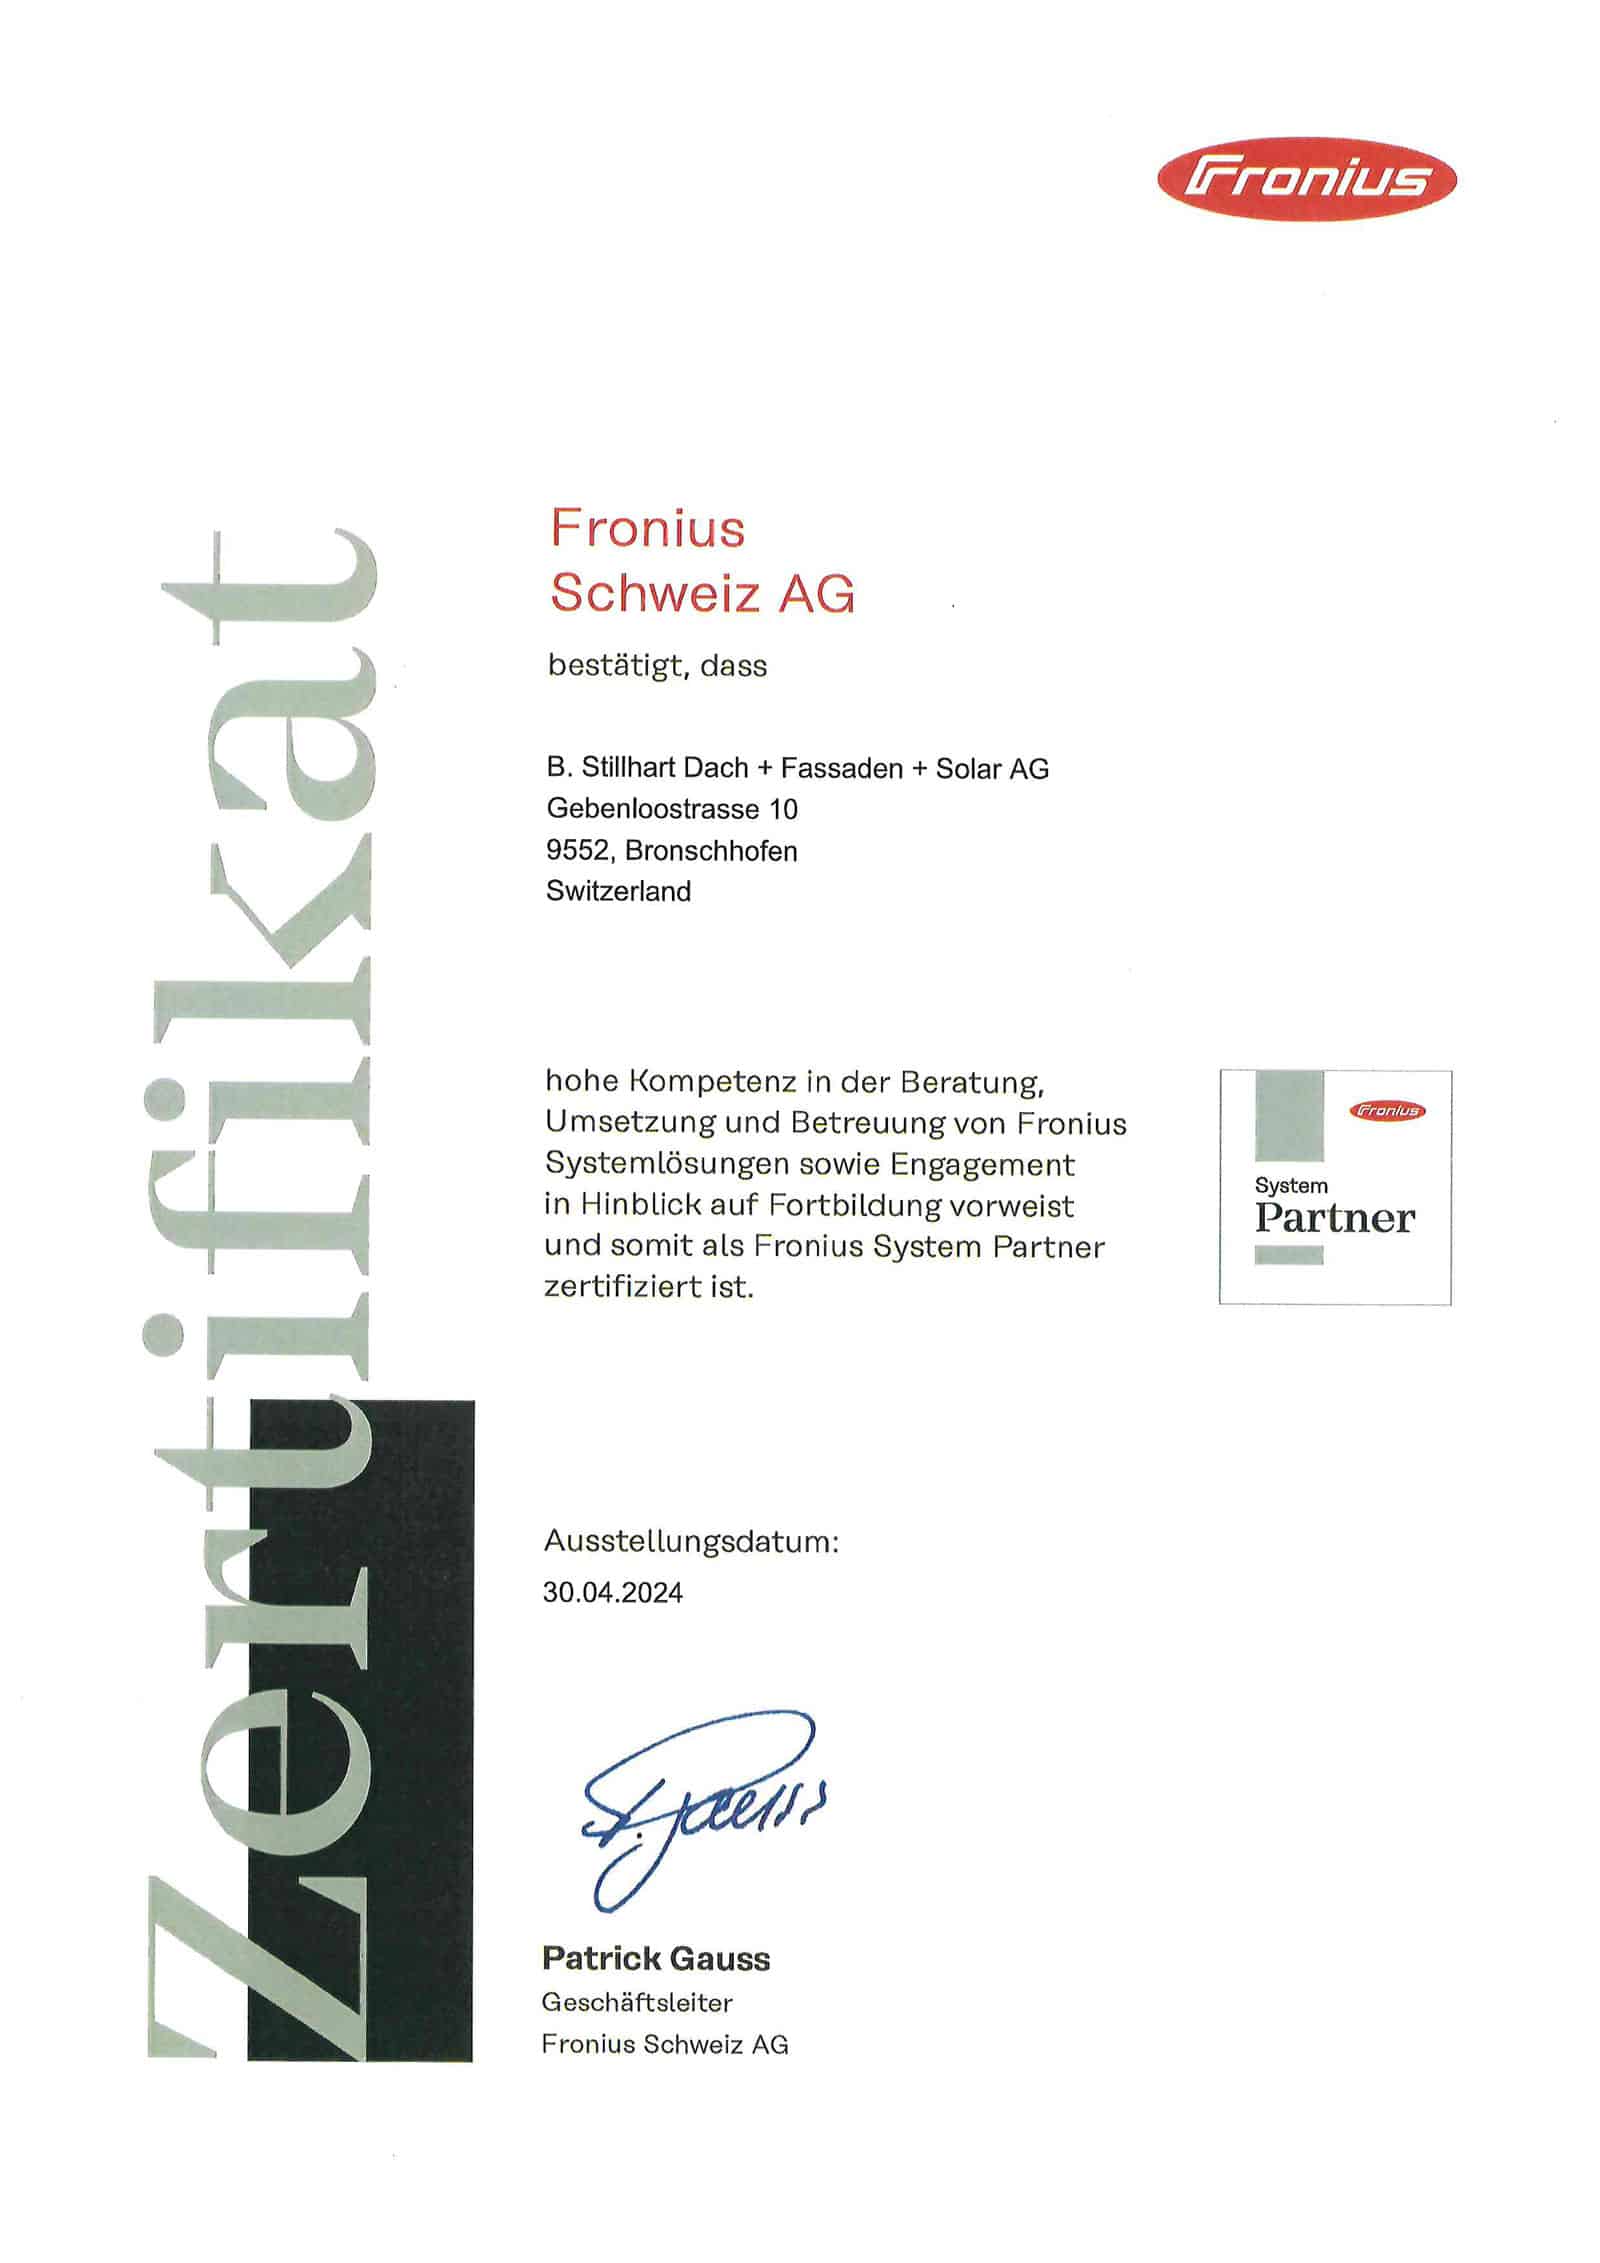 Wir sind zertifiziert als Fronius System Partner